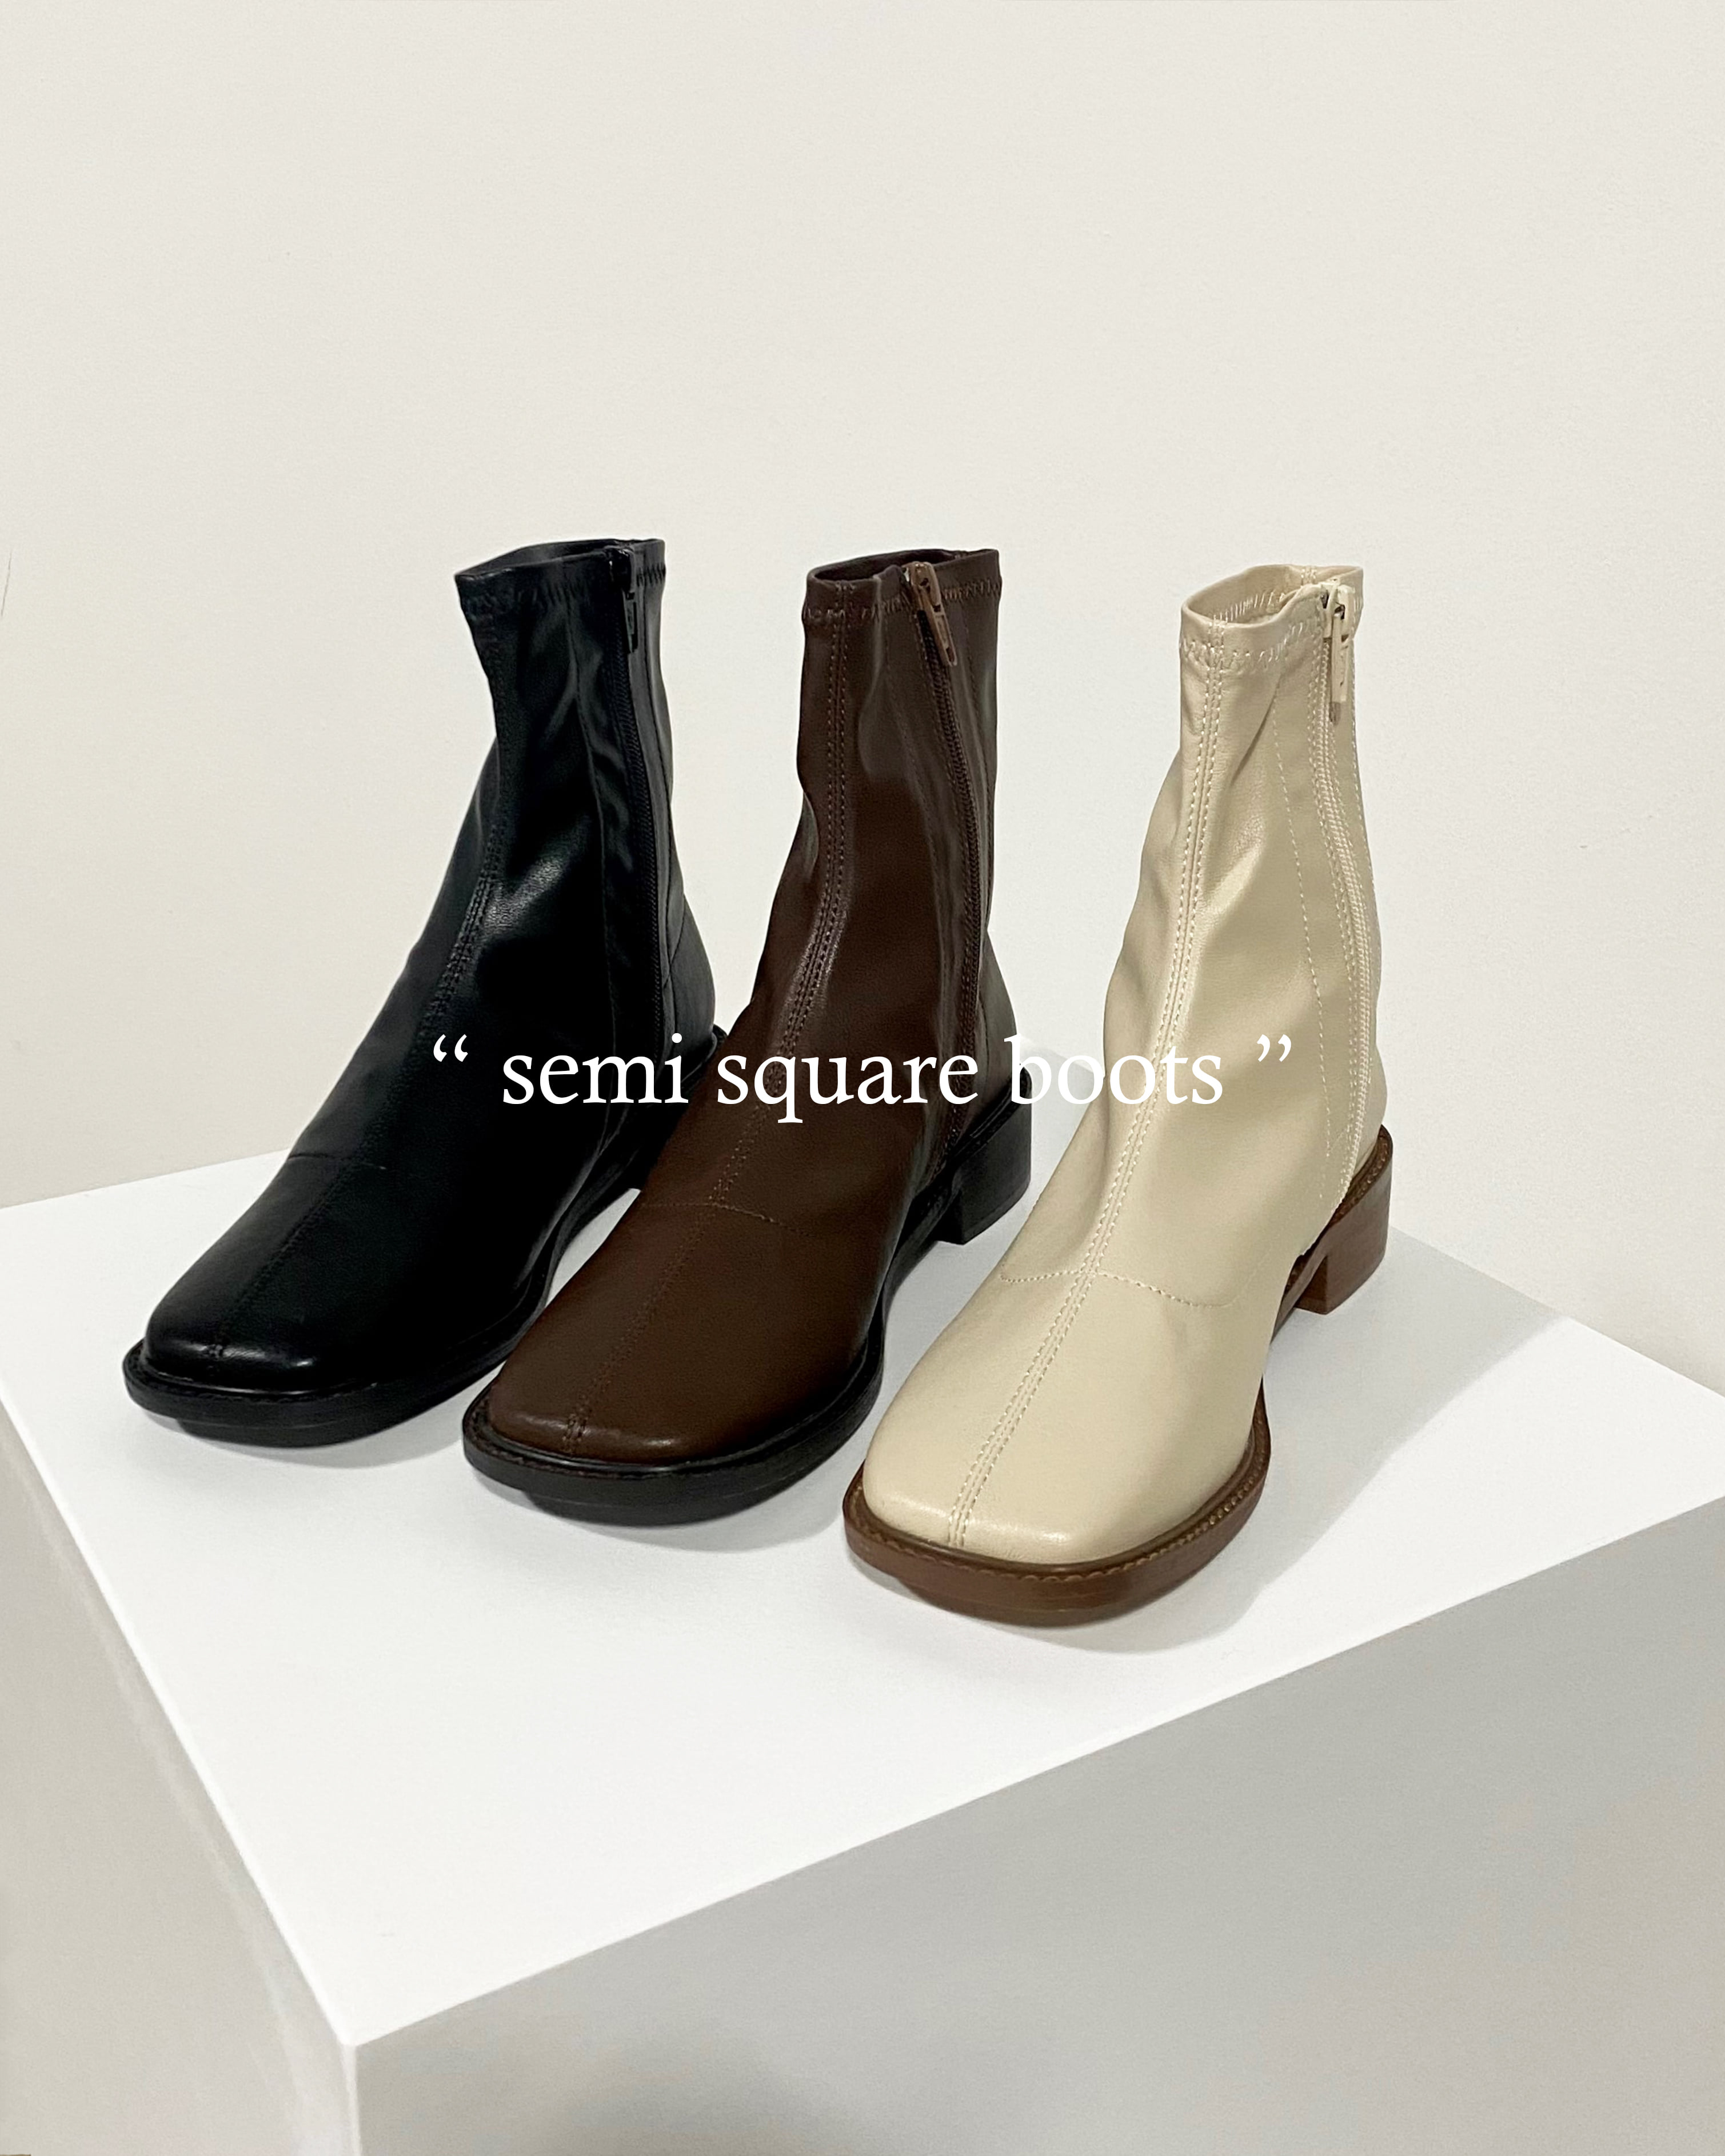 Semi square boots